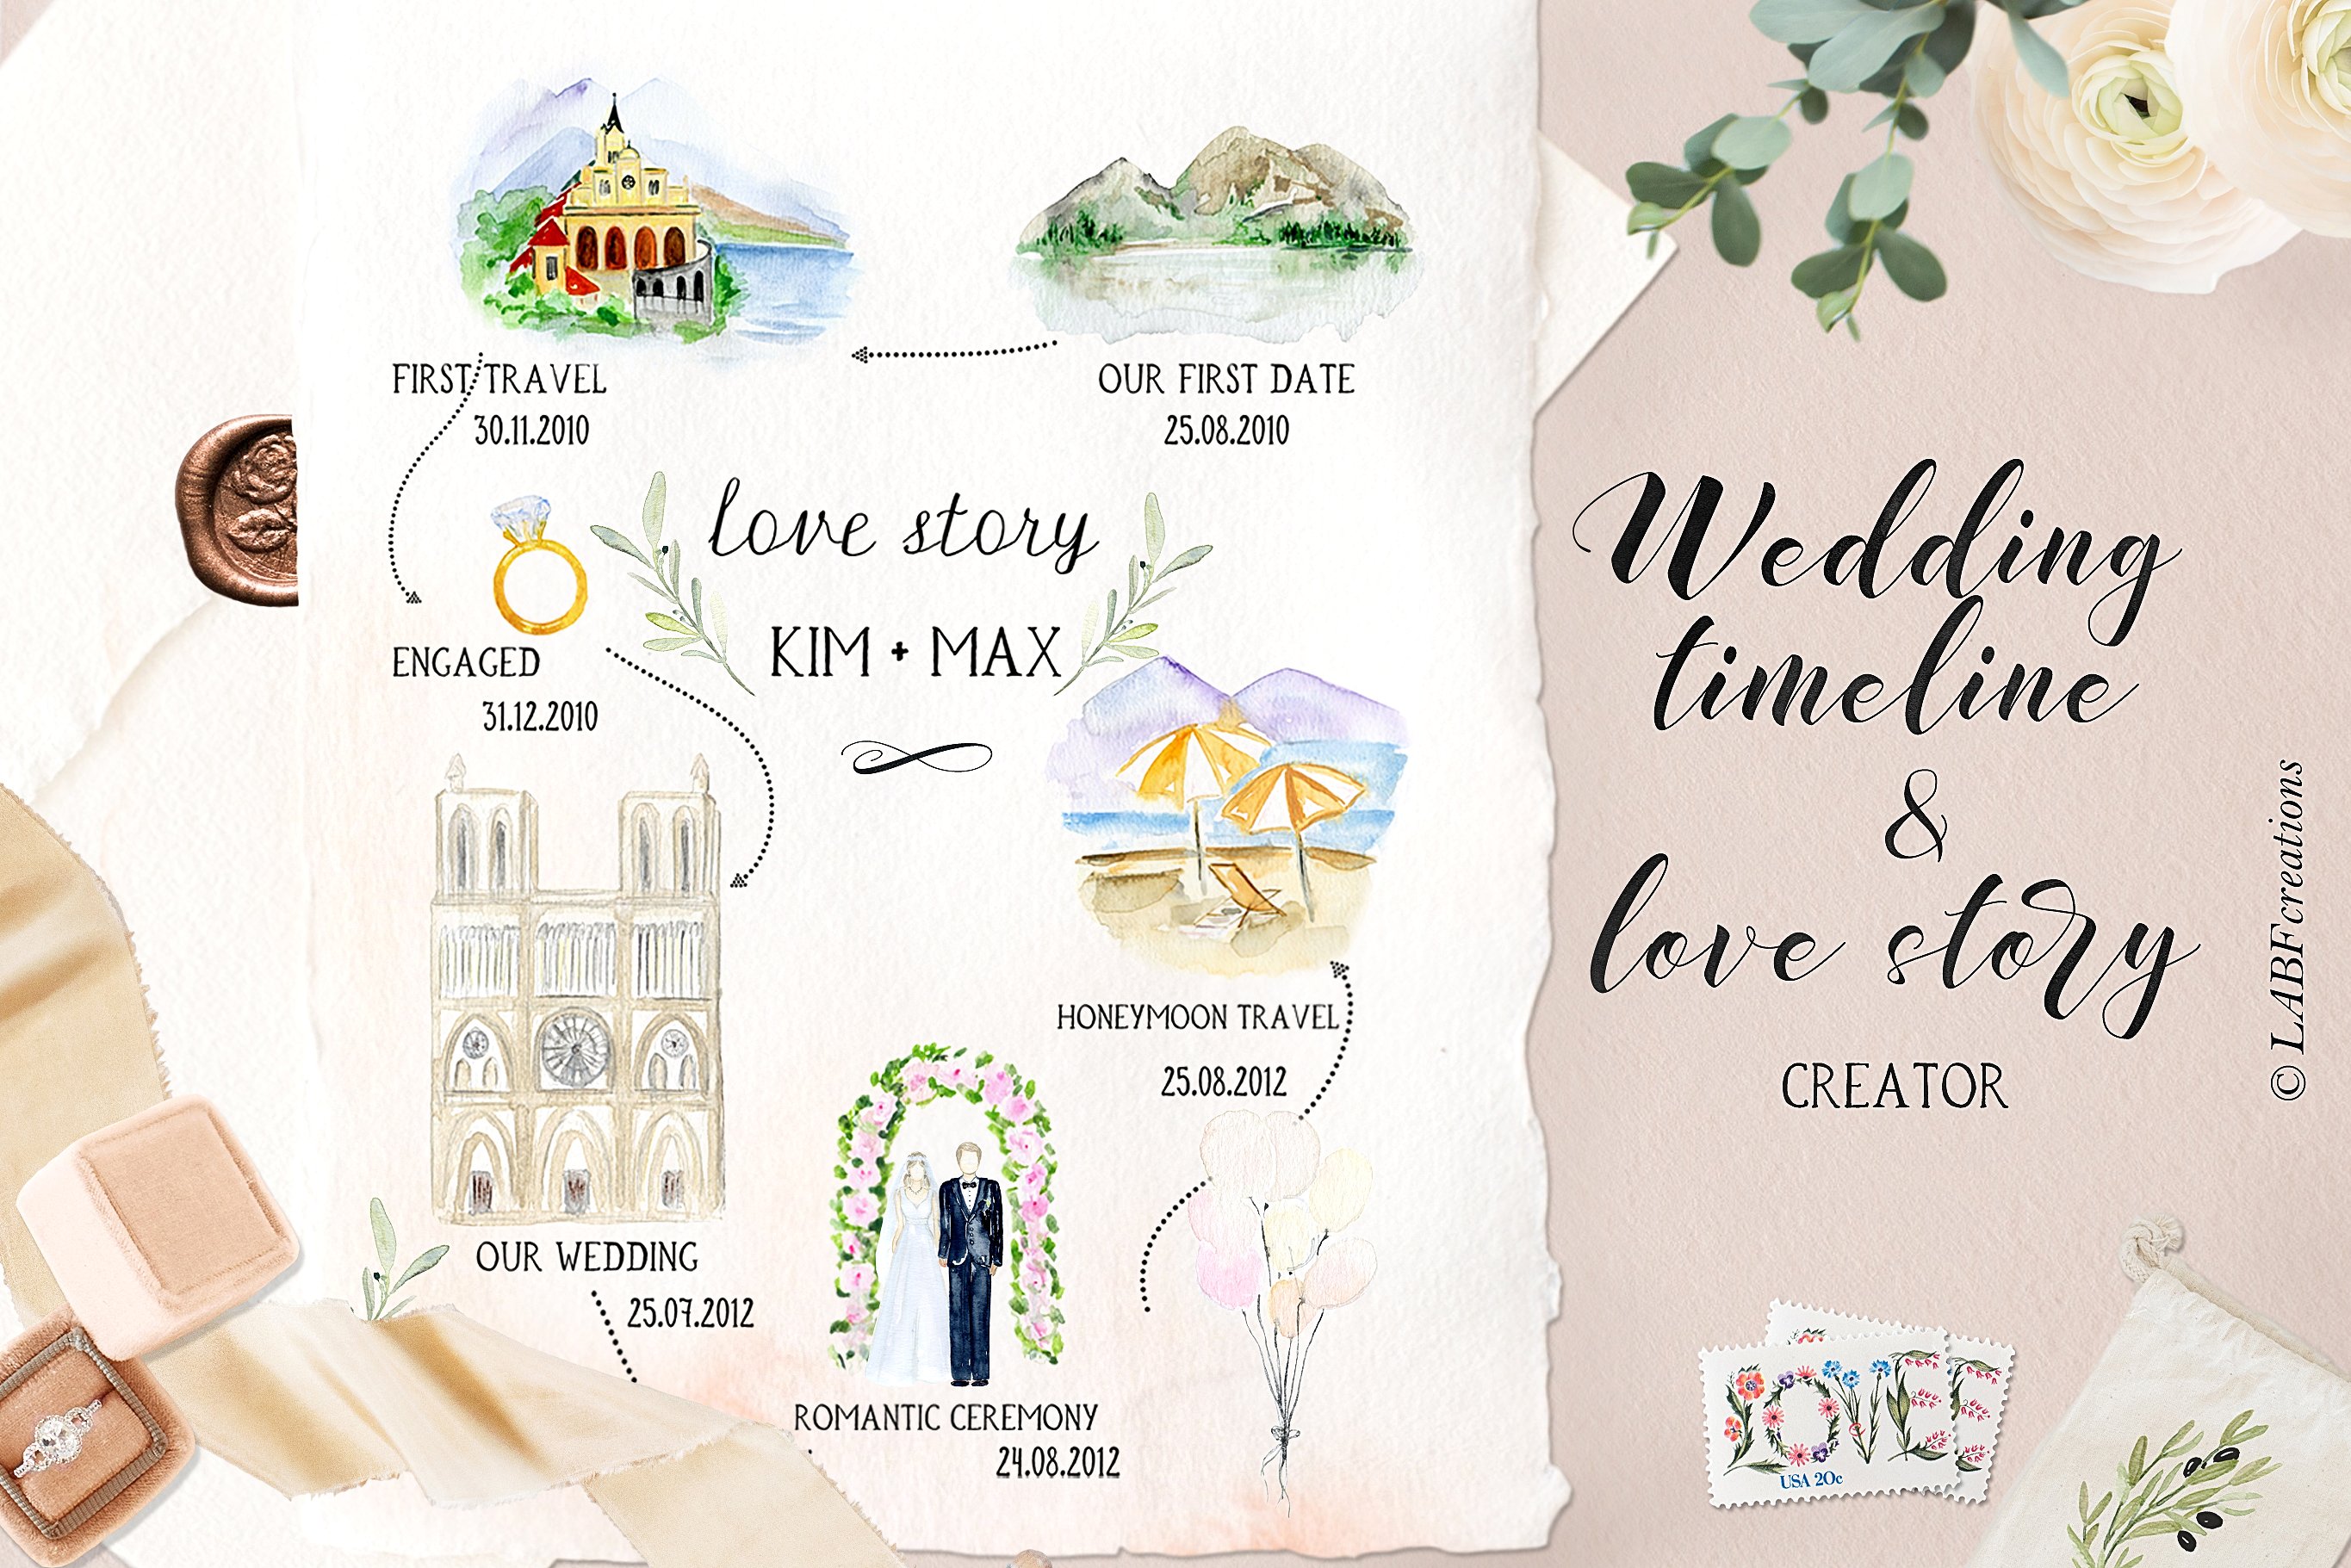 浪漫婚礼时间轴&故事设计素材 Wedding timeline & story creator插图